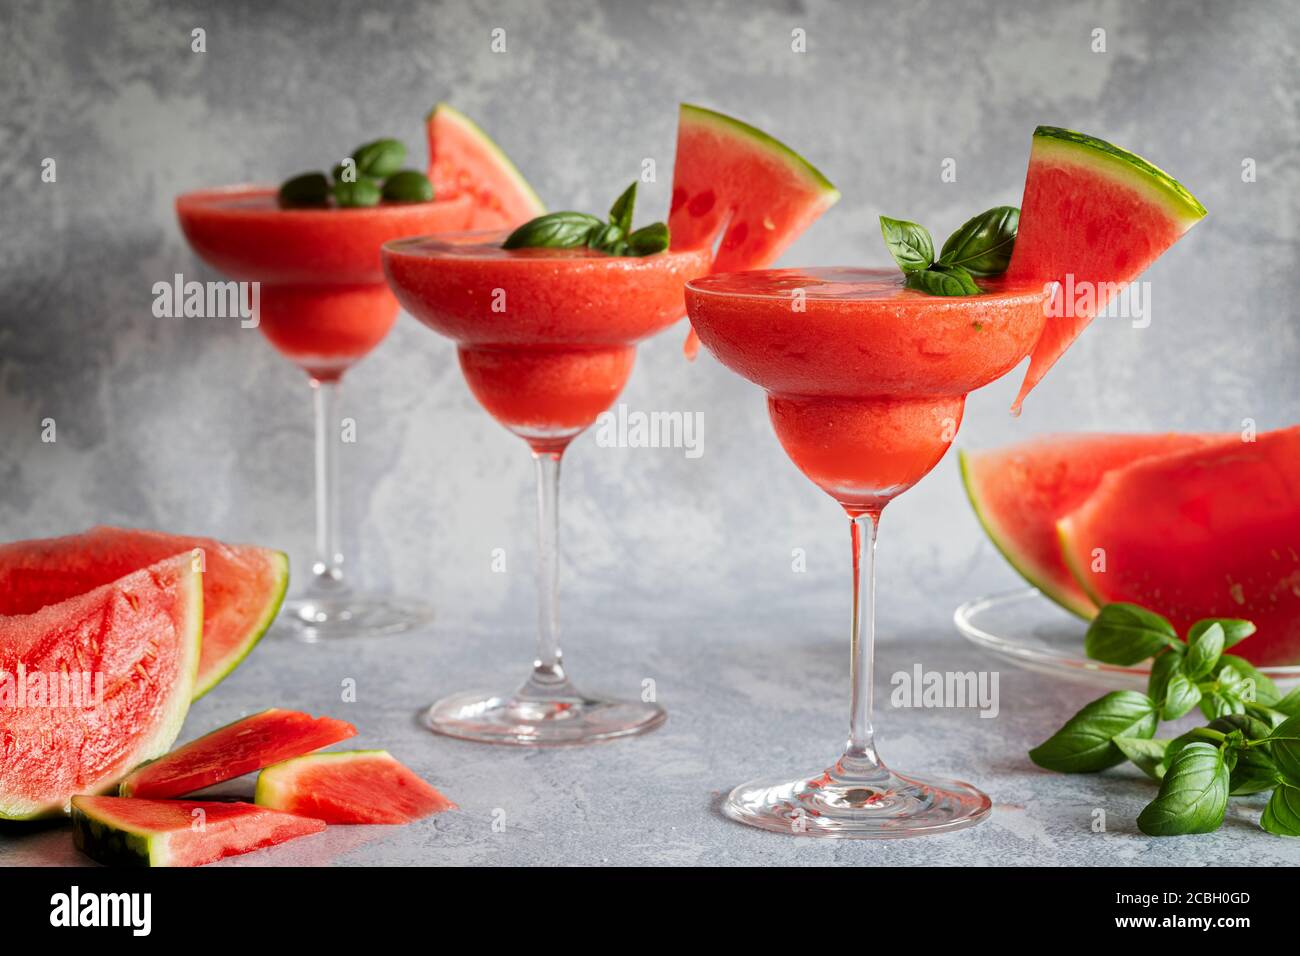 Trois boissons frappées de margarita fraîches et congelées, accompagnées de fraises et de pastèques. Les boissons sont garnies de feuilles de basilic et de pastèque. Fond gris Banque D'Images